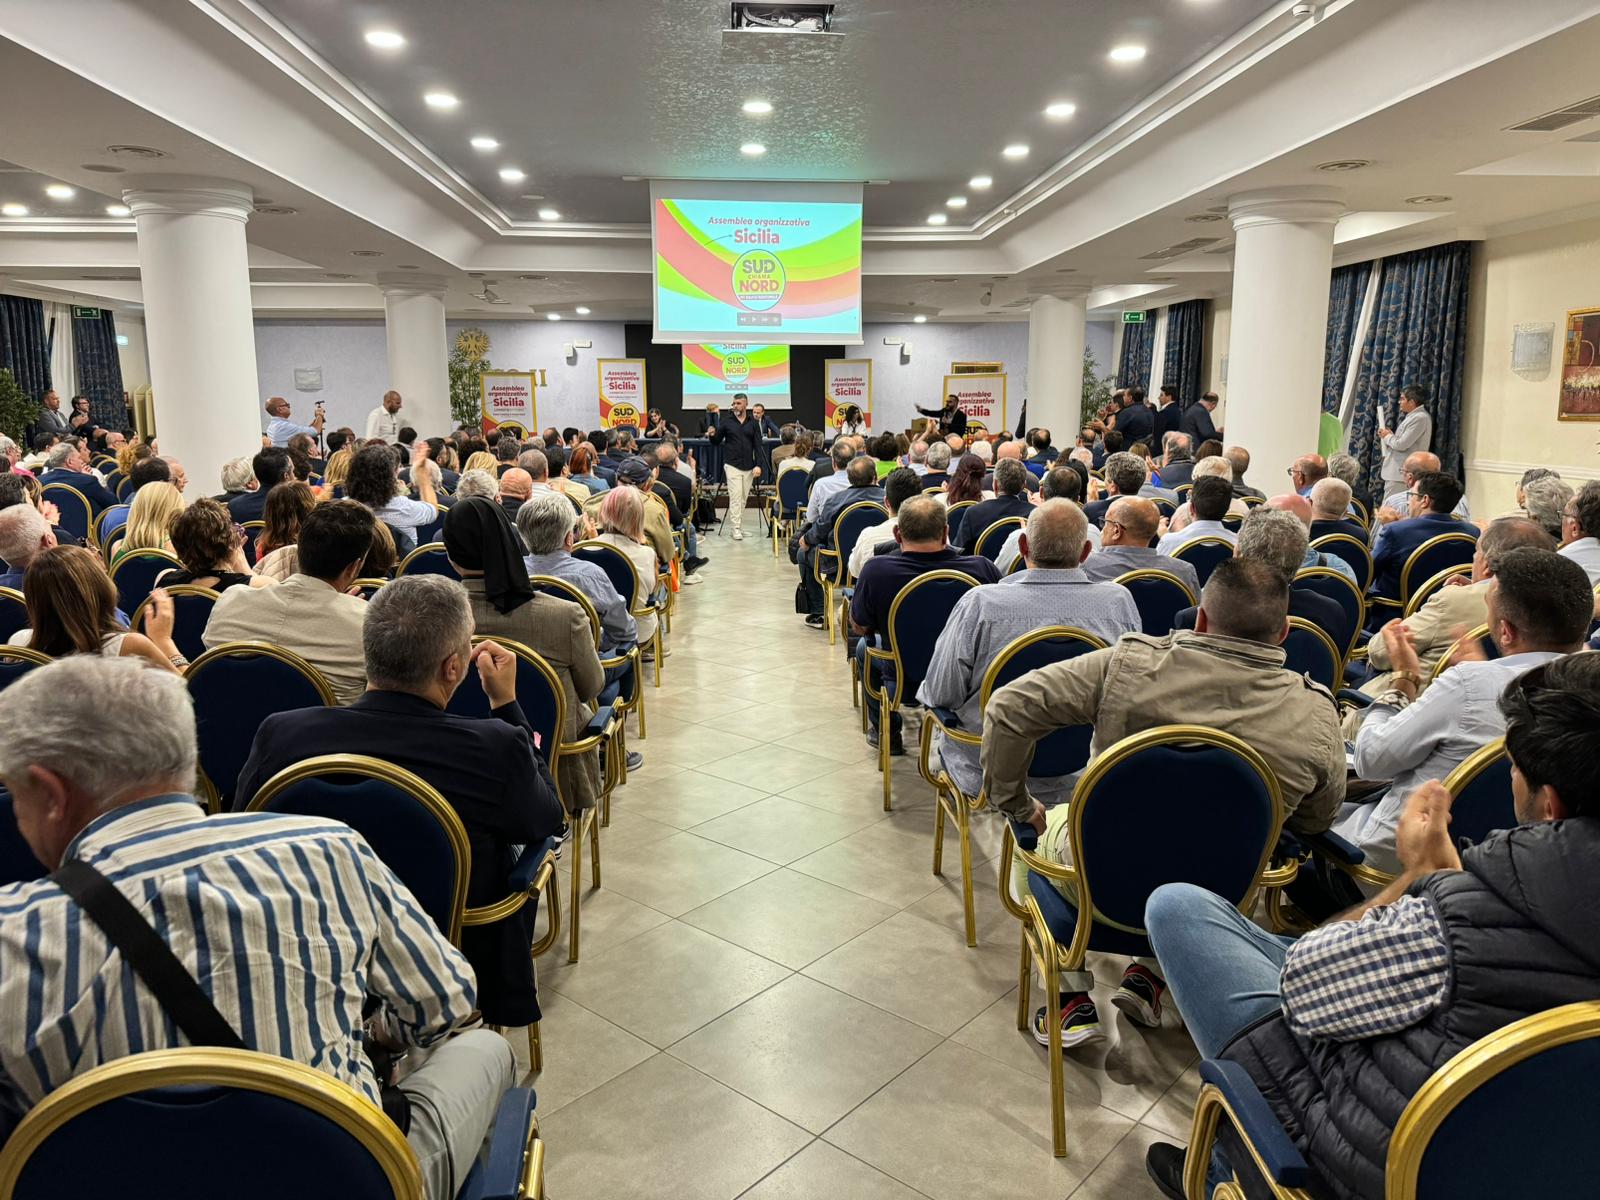 Oltre 500 partecipanti all’ assemblea regionale siciliana di Sud chiama Nord a Enna.